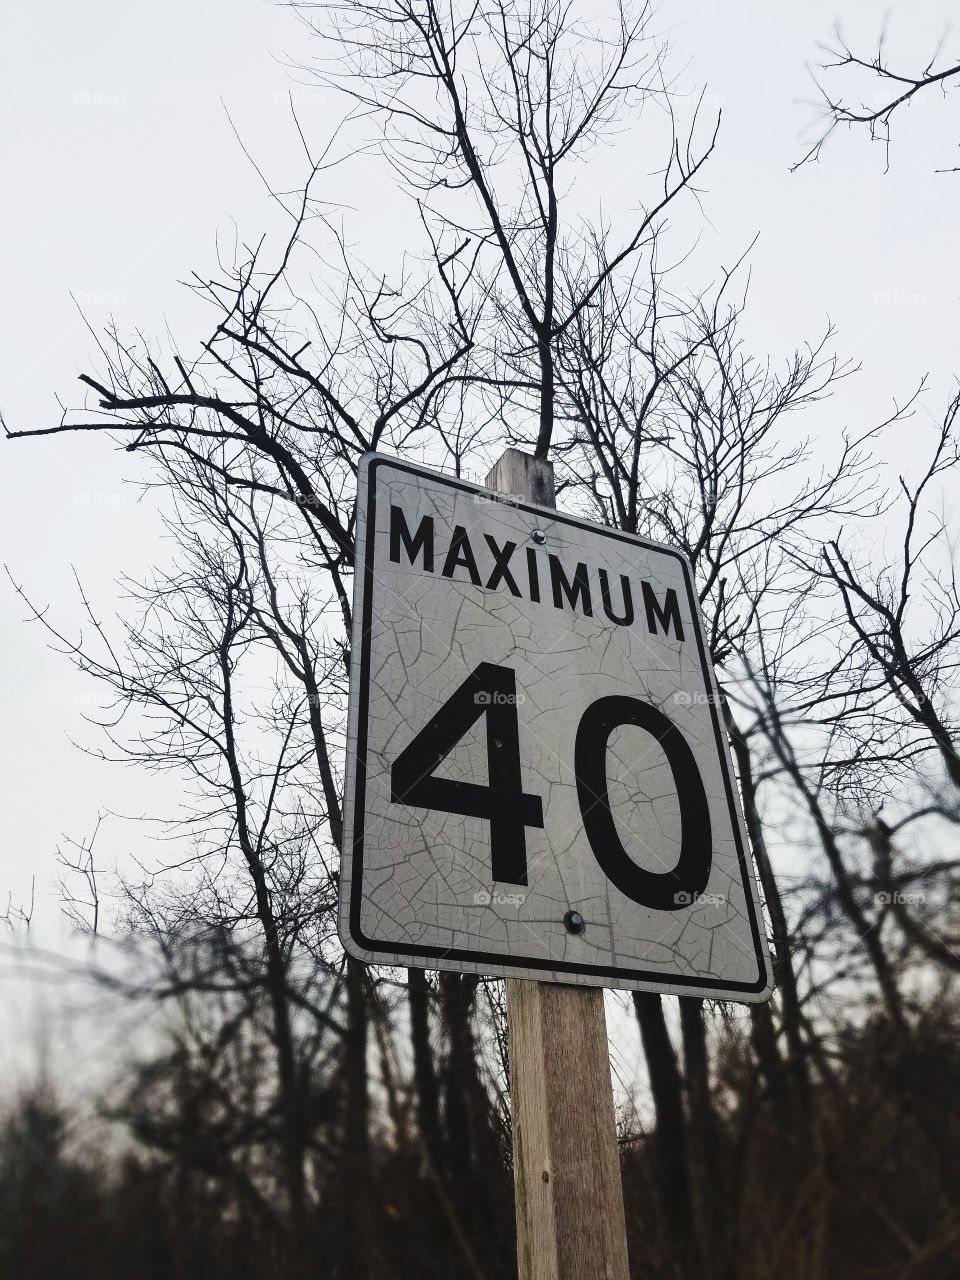 Maximum 40Km/h sign